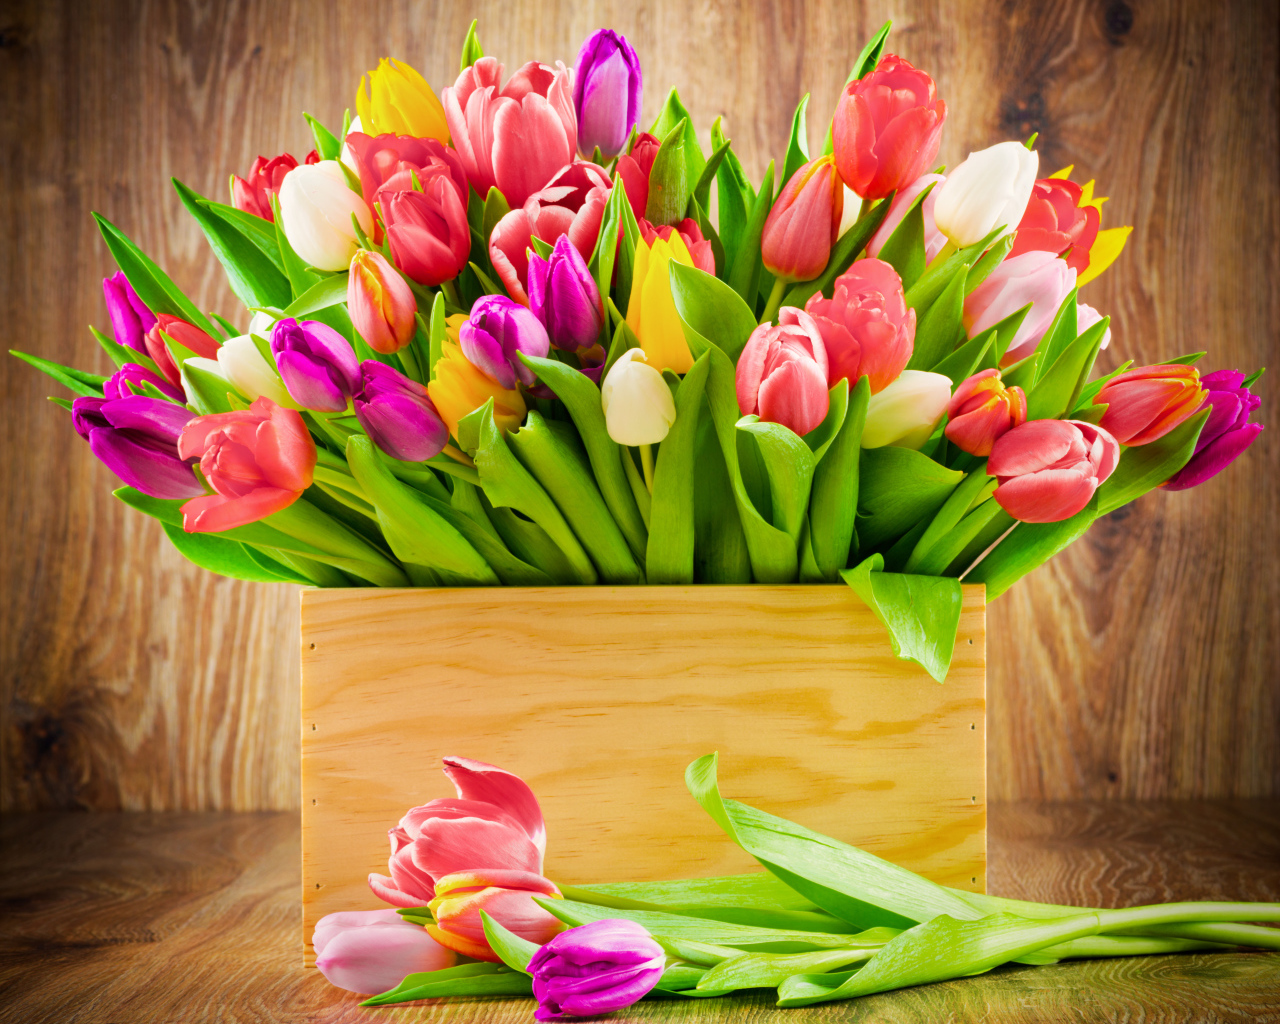 Деревянный ящик с разноцветными тюльпанами